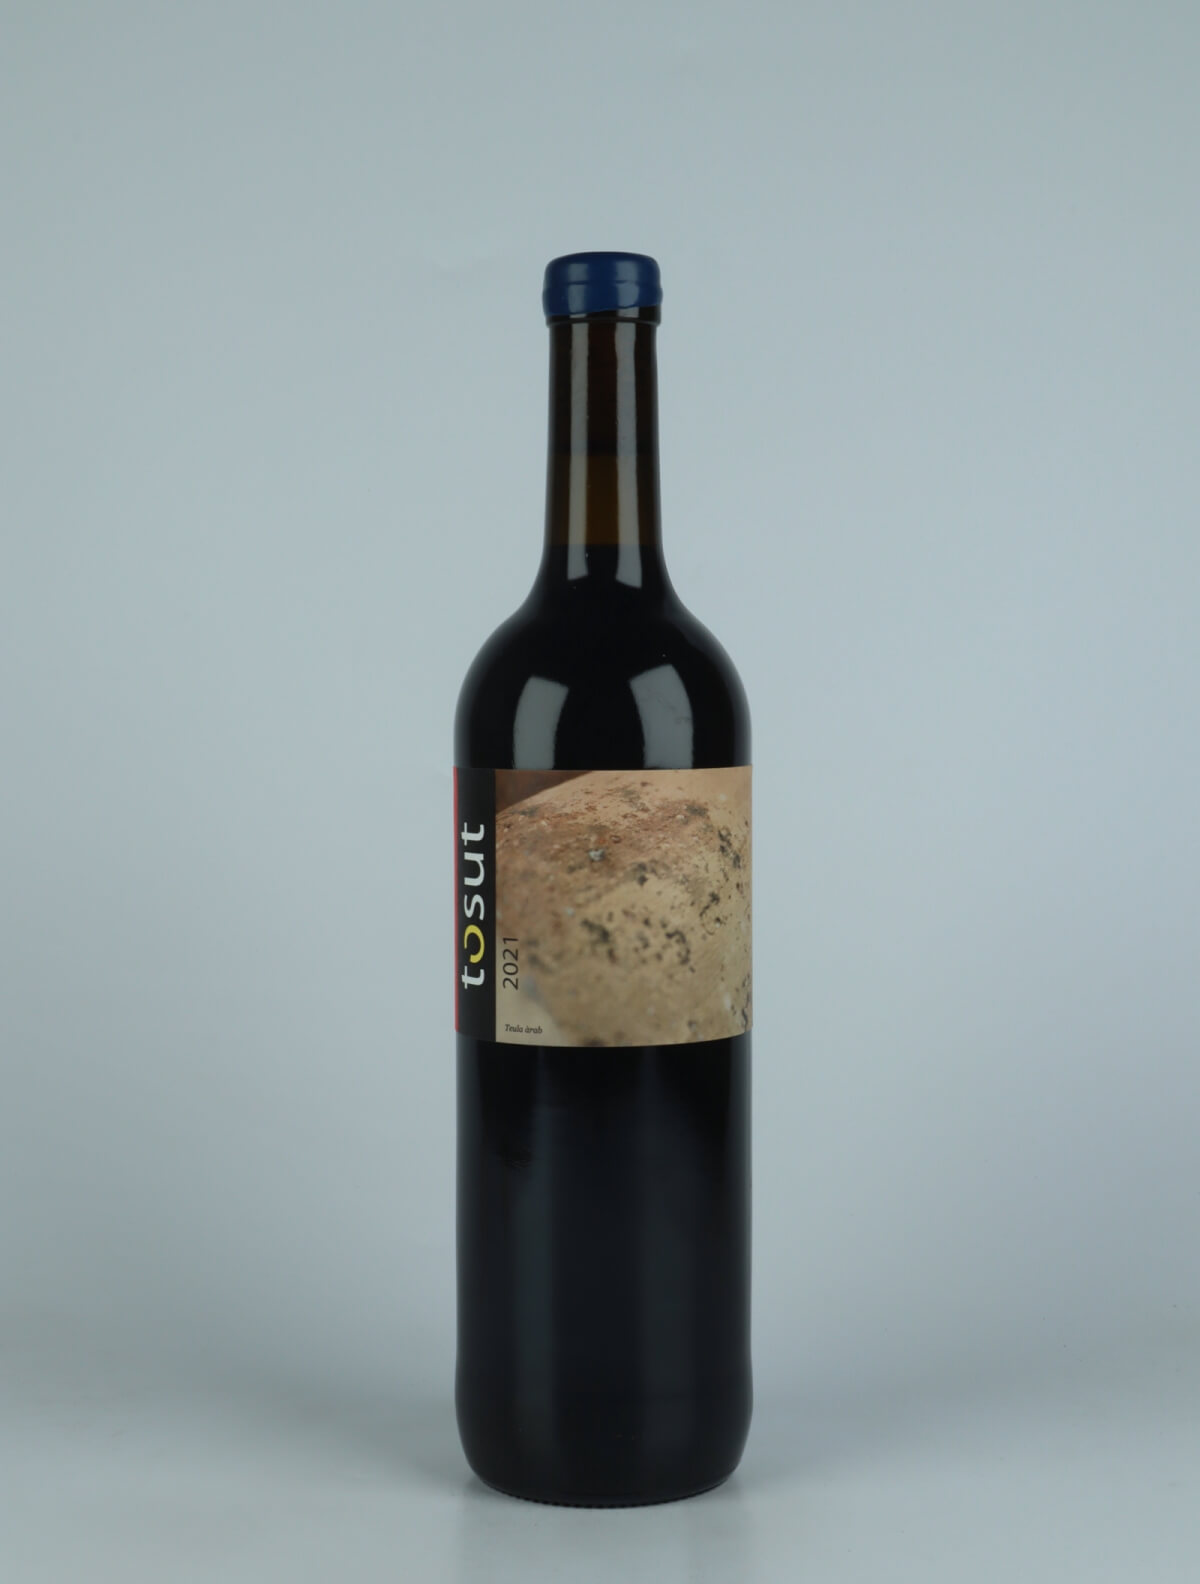 En flaske 2021 Tosut Rødvin fra Jordi Llorens, Catalonien i Spanien